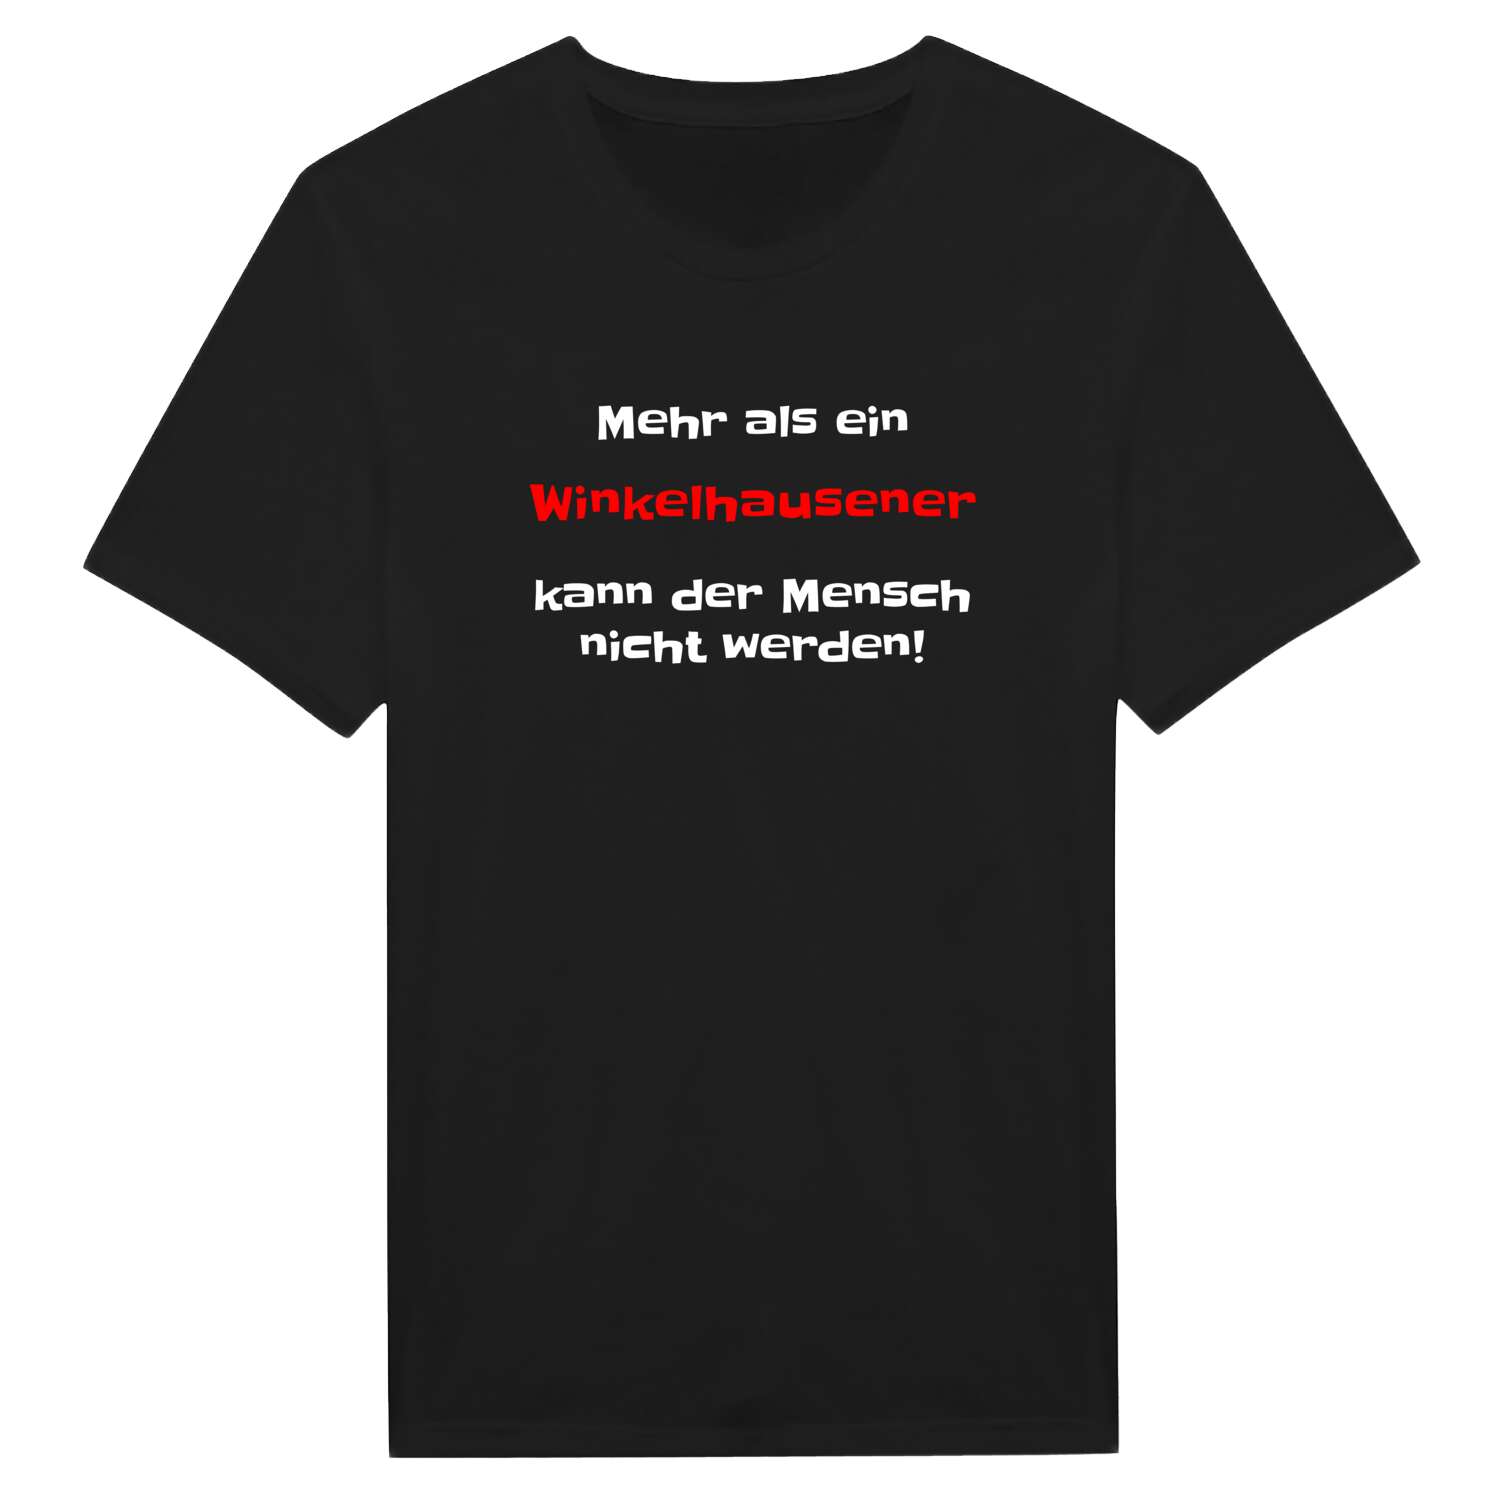 Winkelhausen T-Shirt »Mehr als ein«